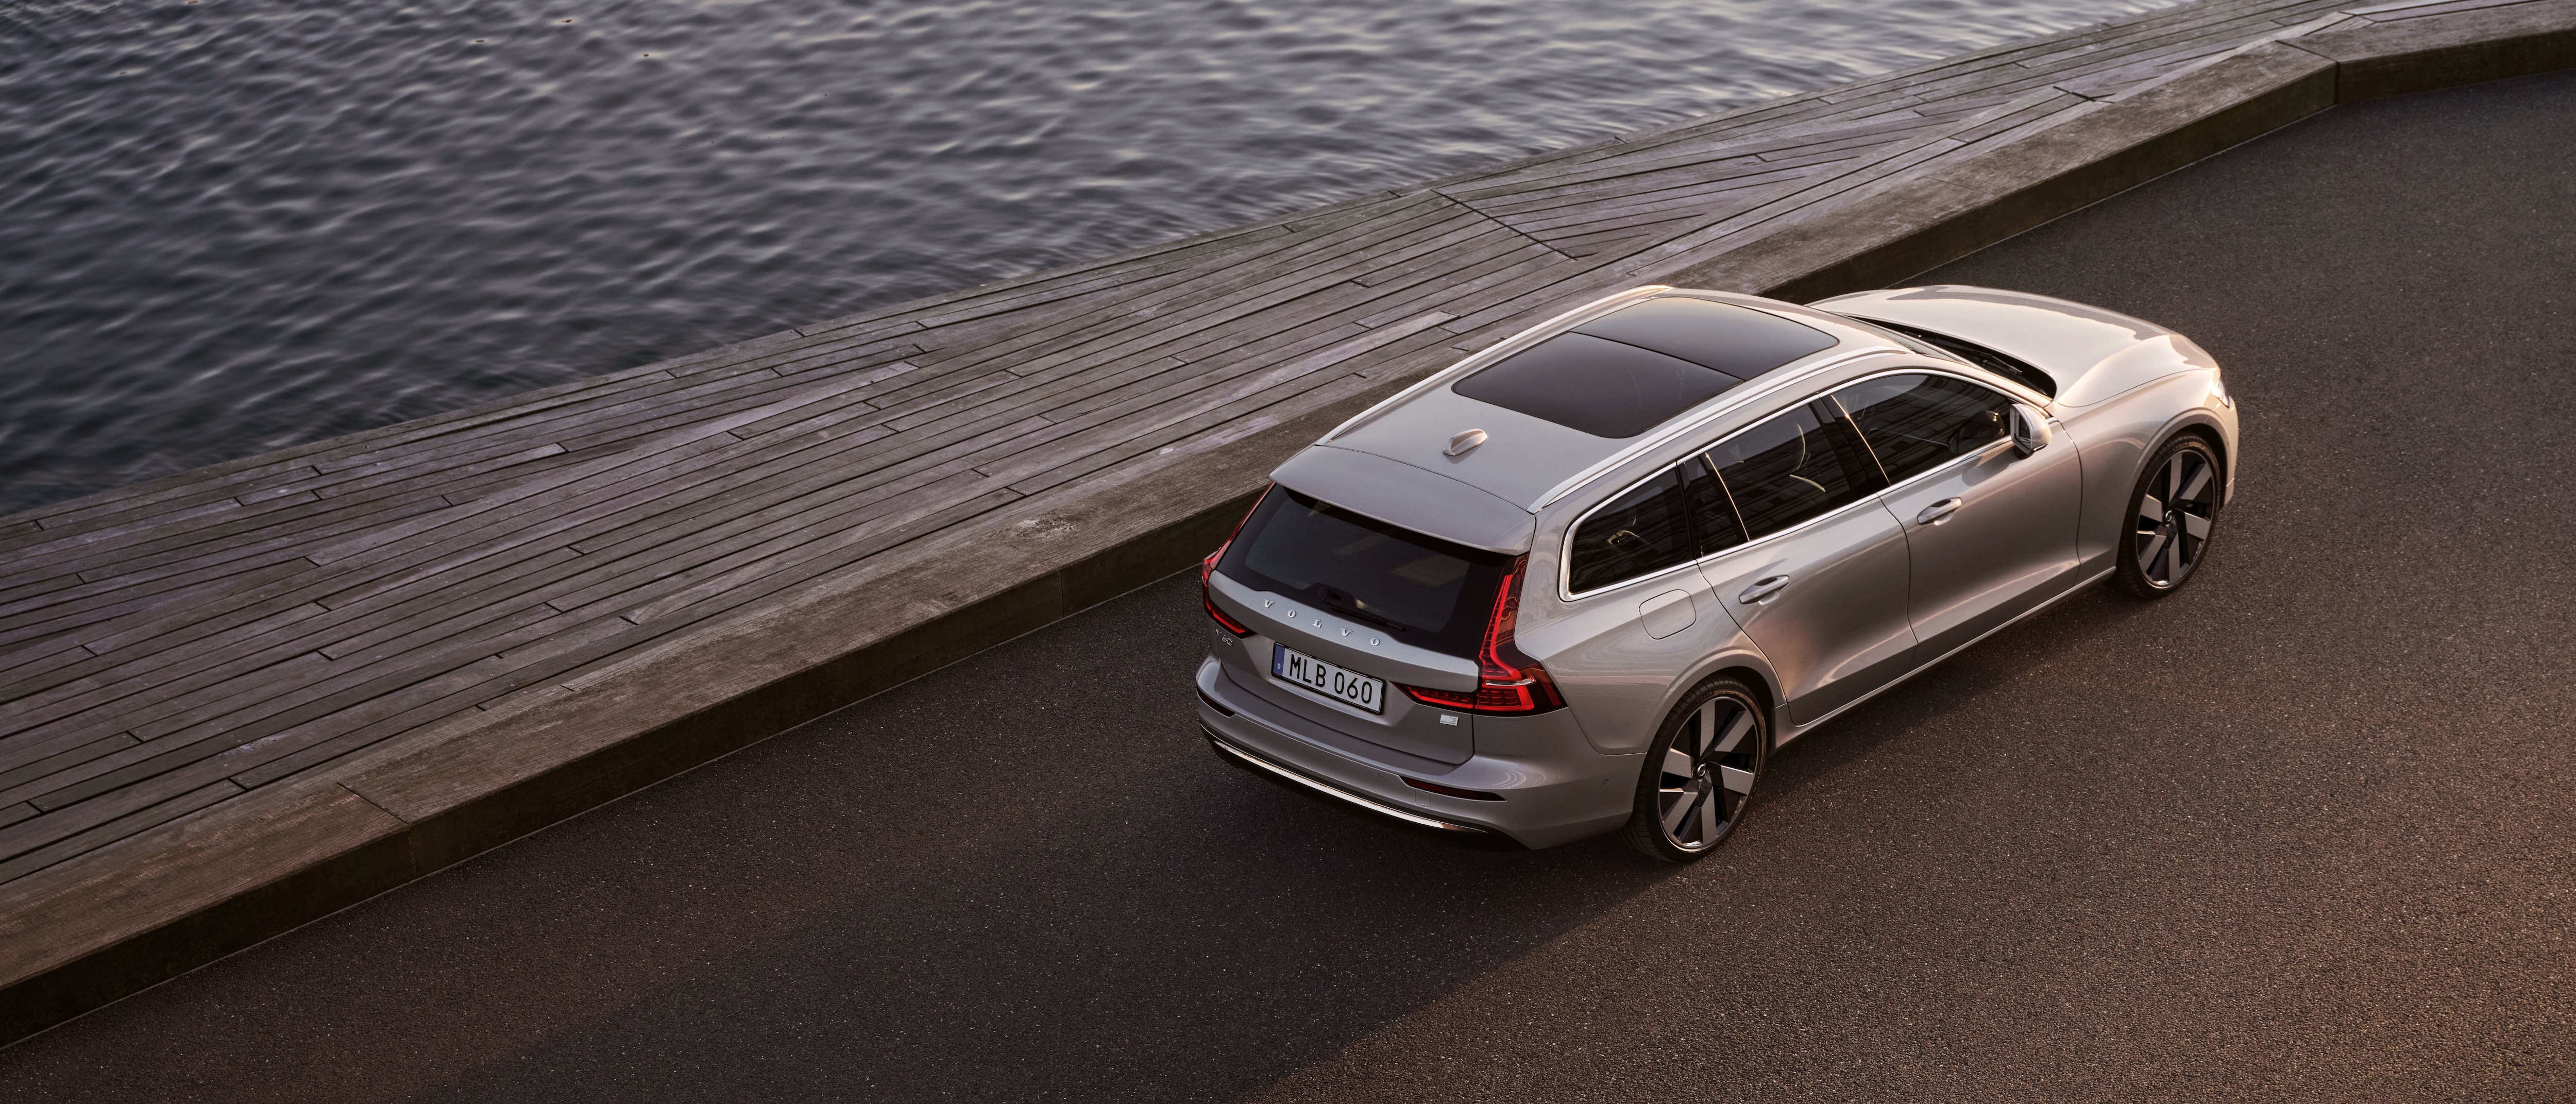 Sechs Volvo Fahrzeuge in der Farbe Crystal White Pearl stehen bei Sonnenuntergang aufgereiht auf einem Parkdeck